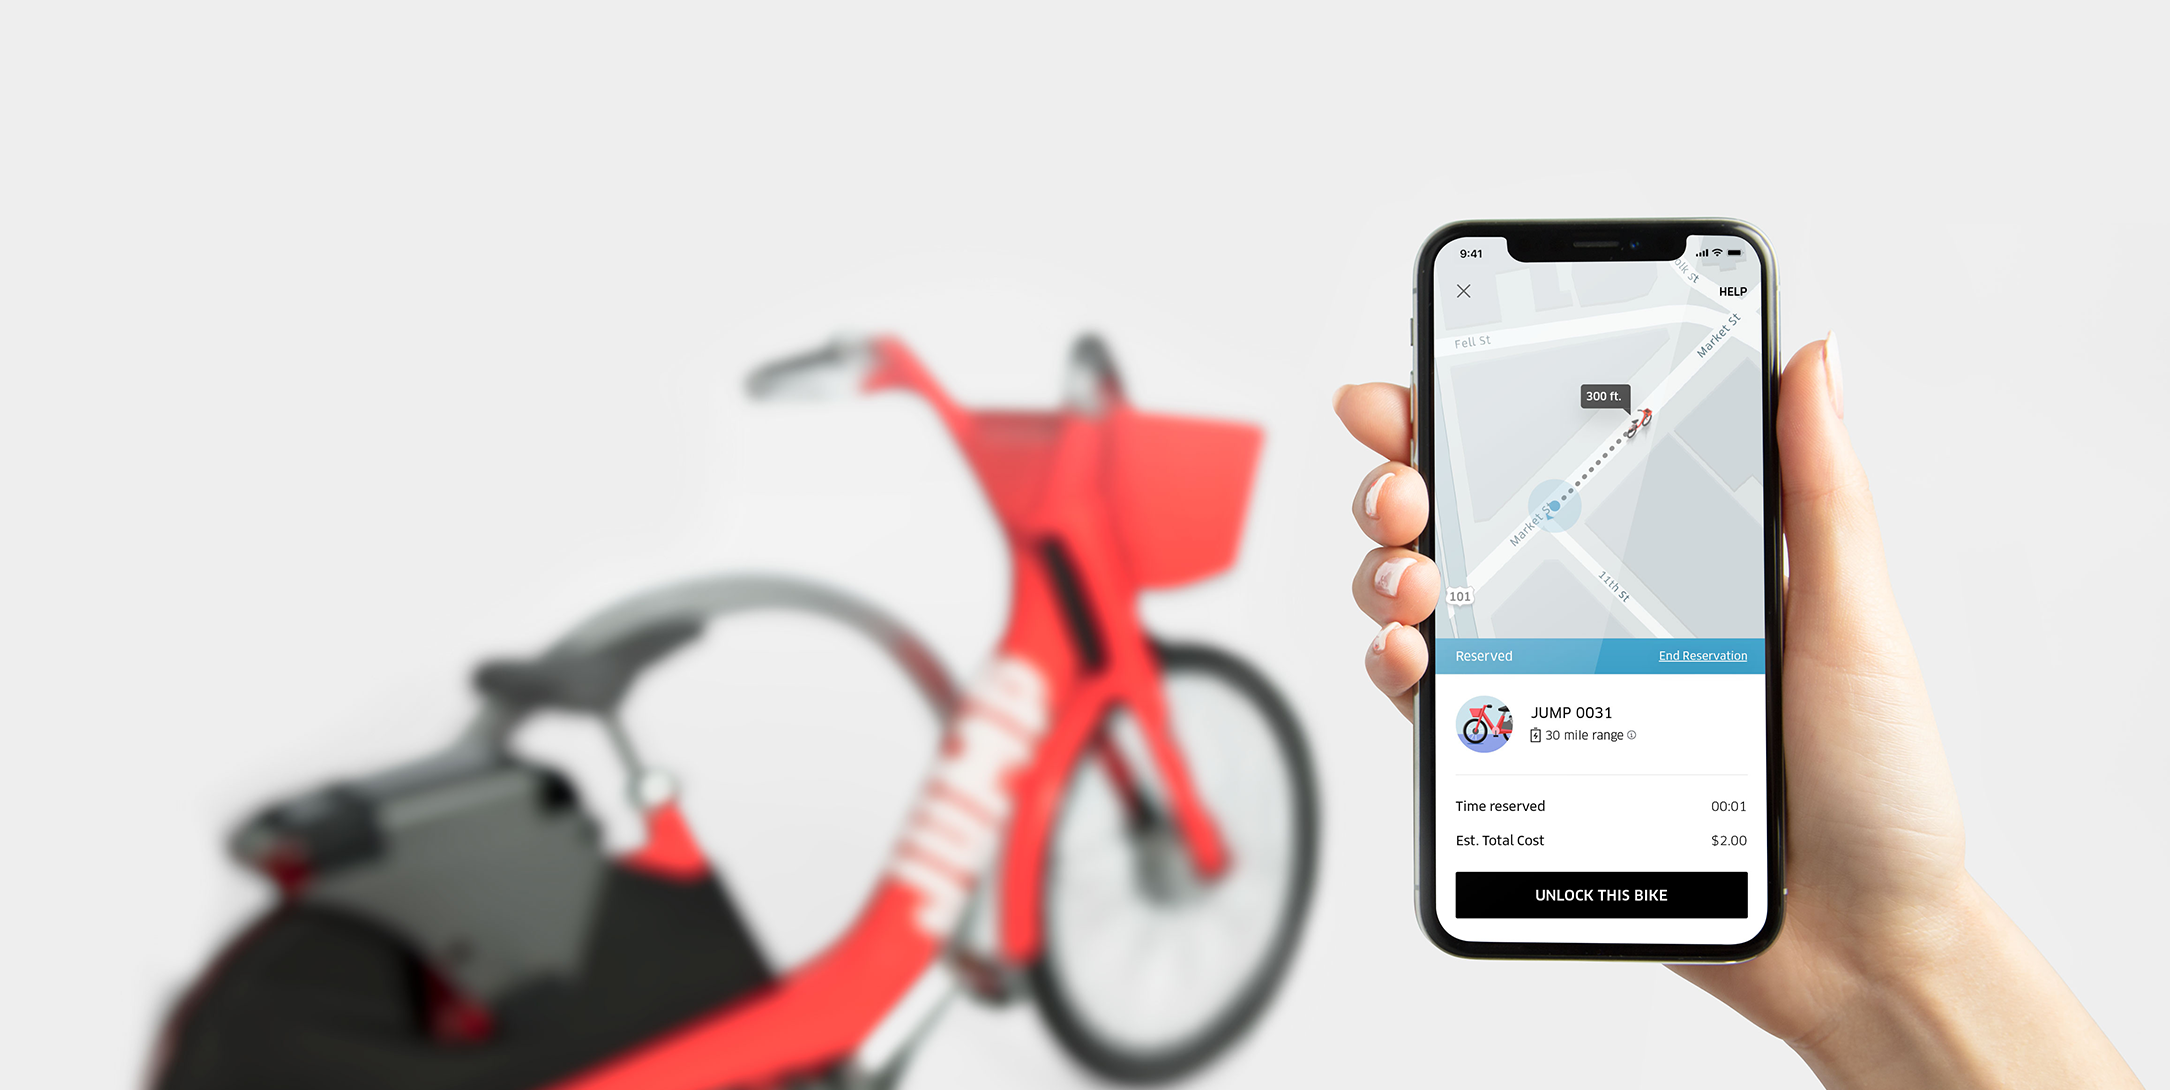 Uber compra empresa de compartilhamento de bicicletas